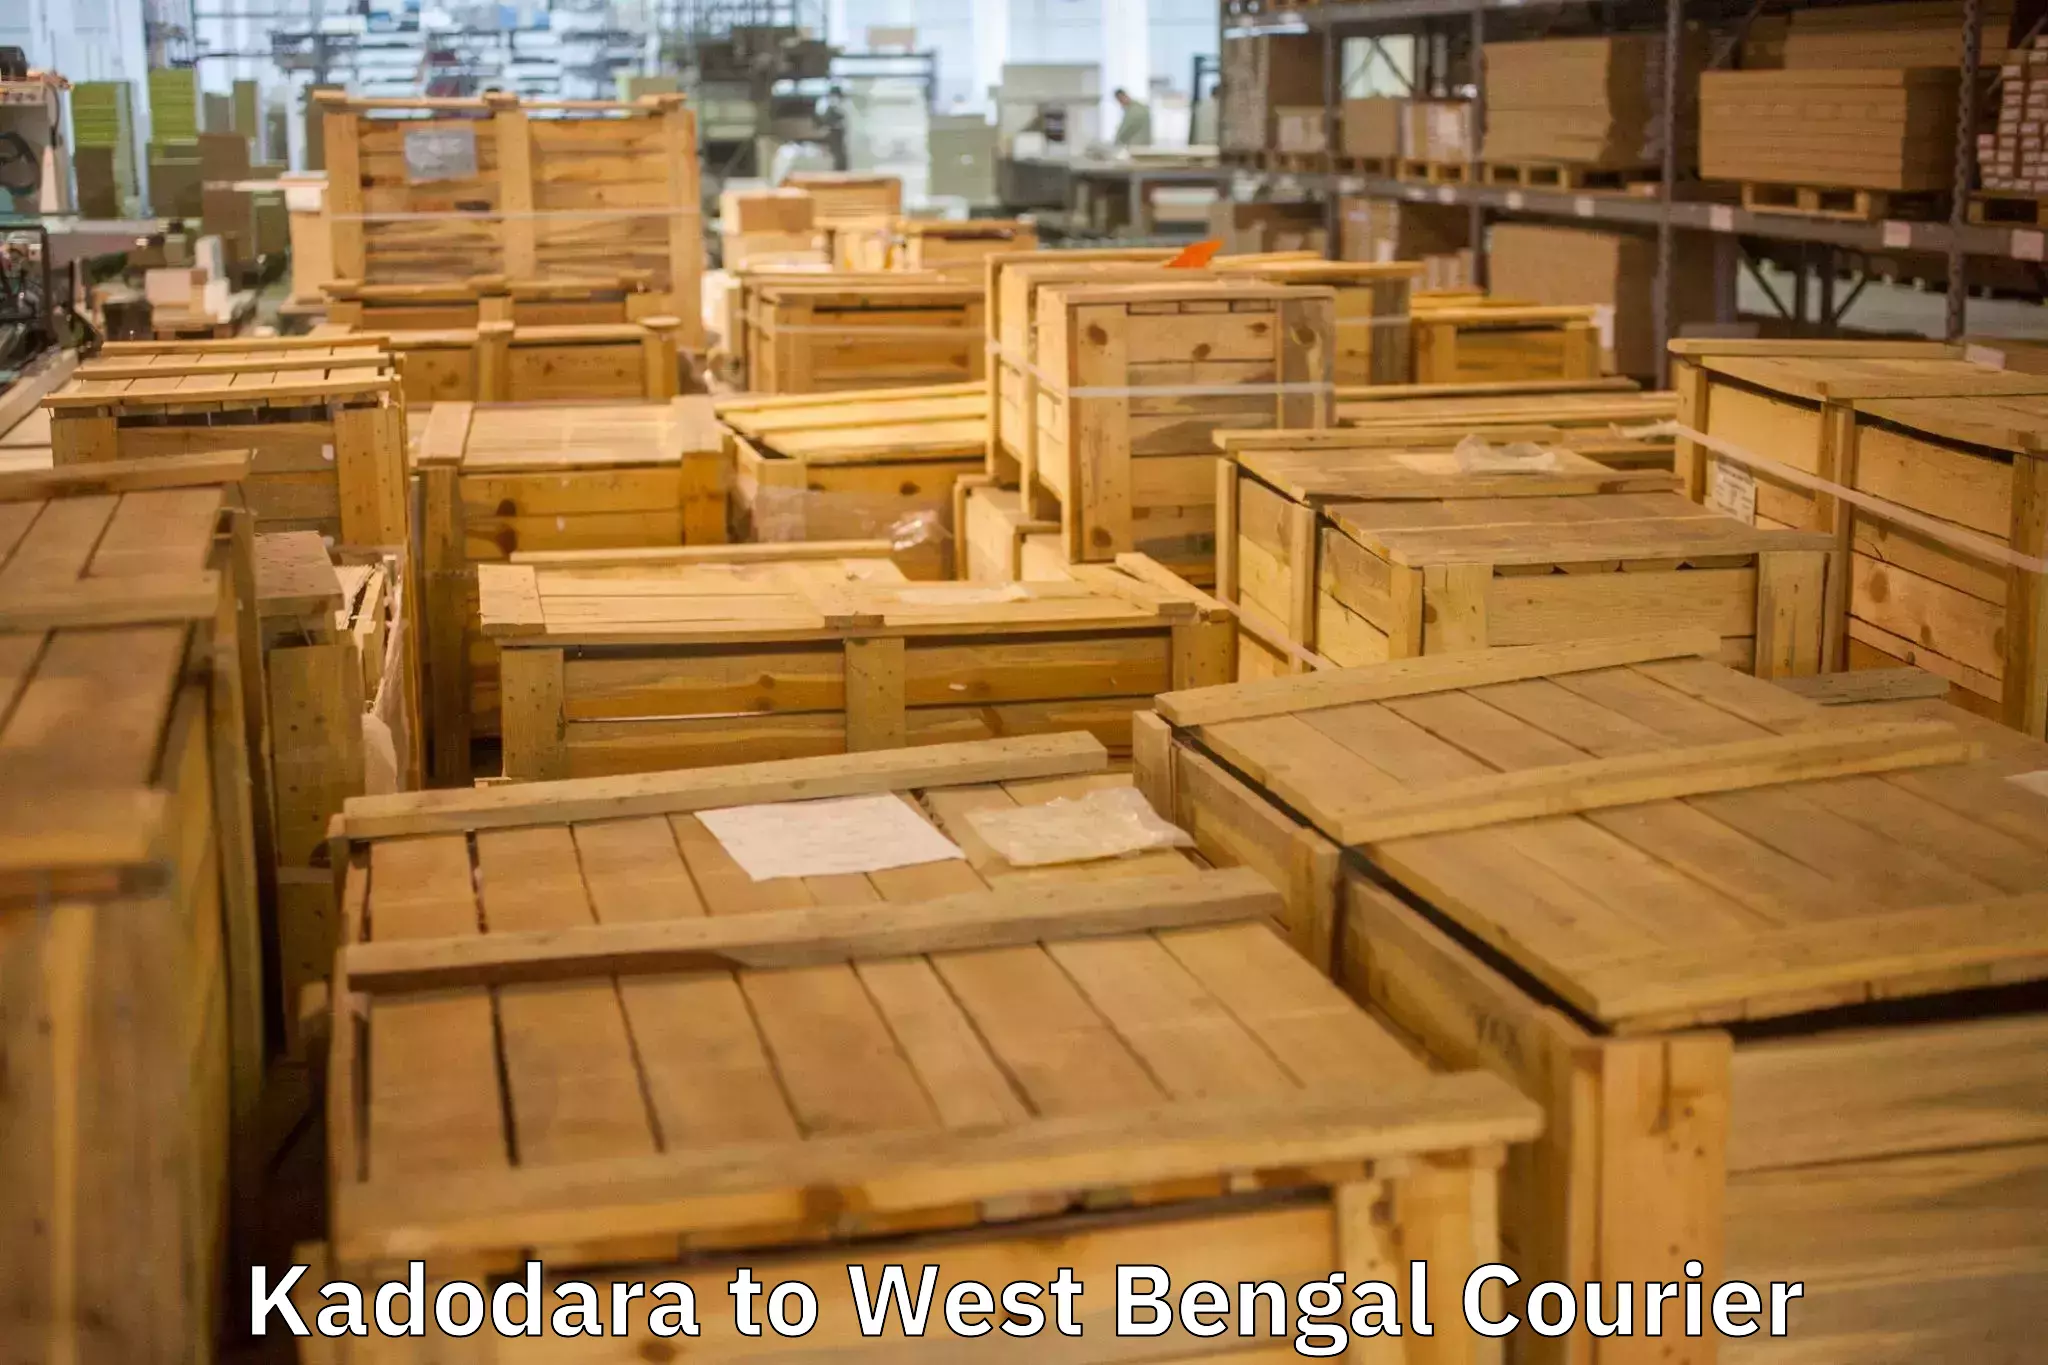 Moving and packing experts Kadodara to Khardah